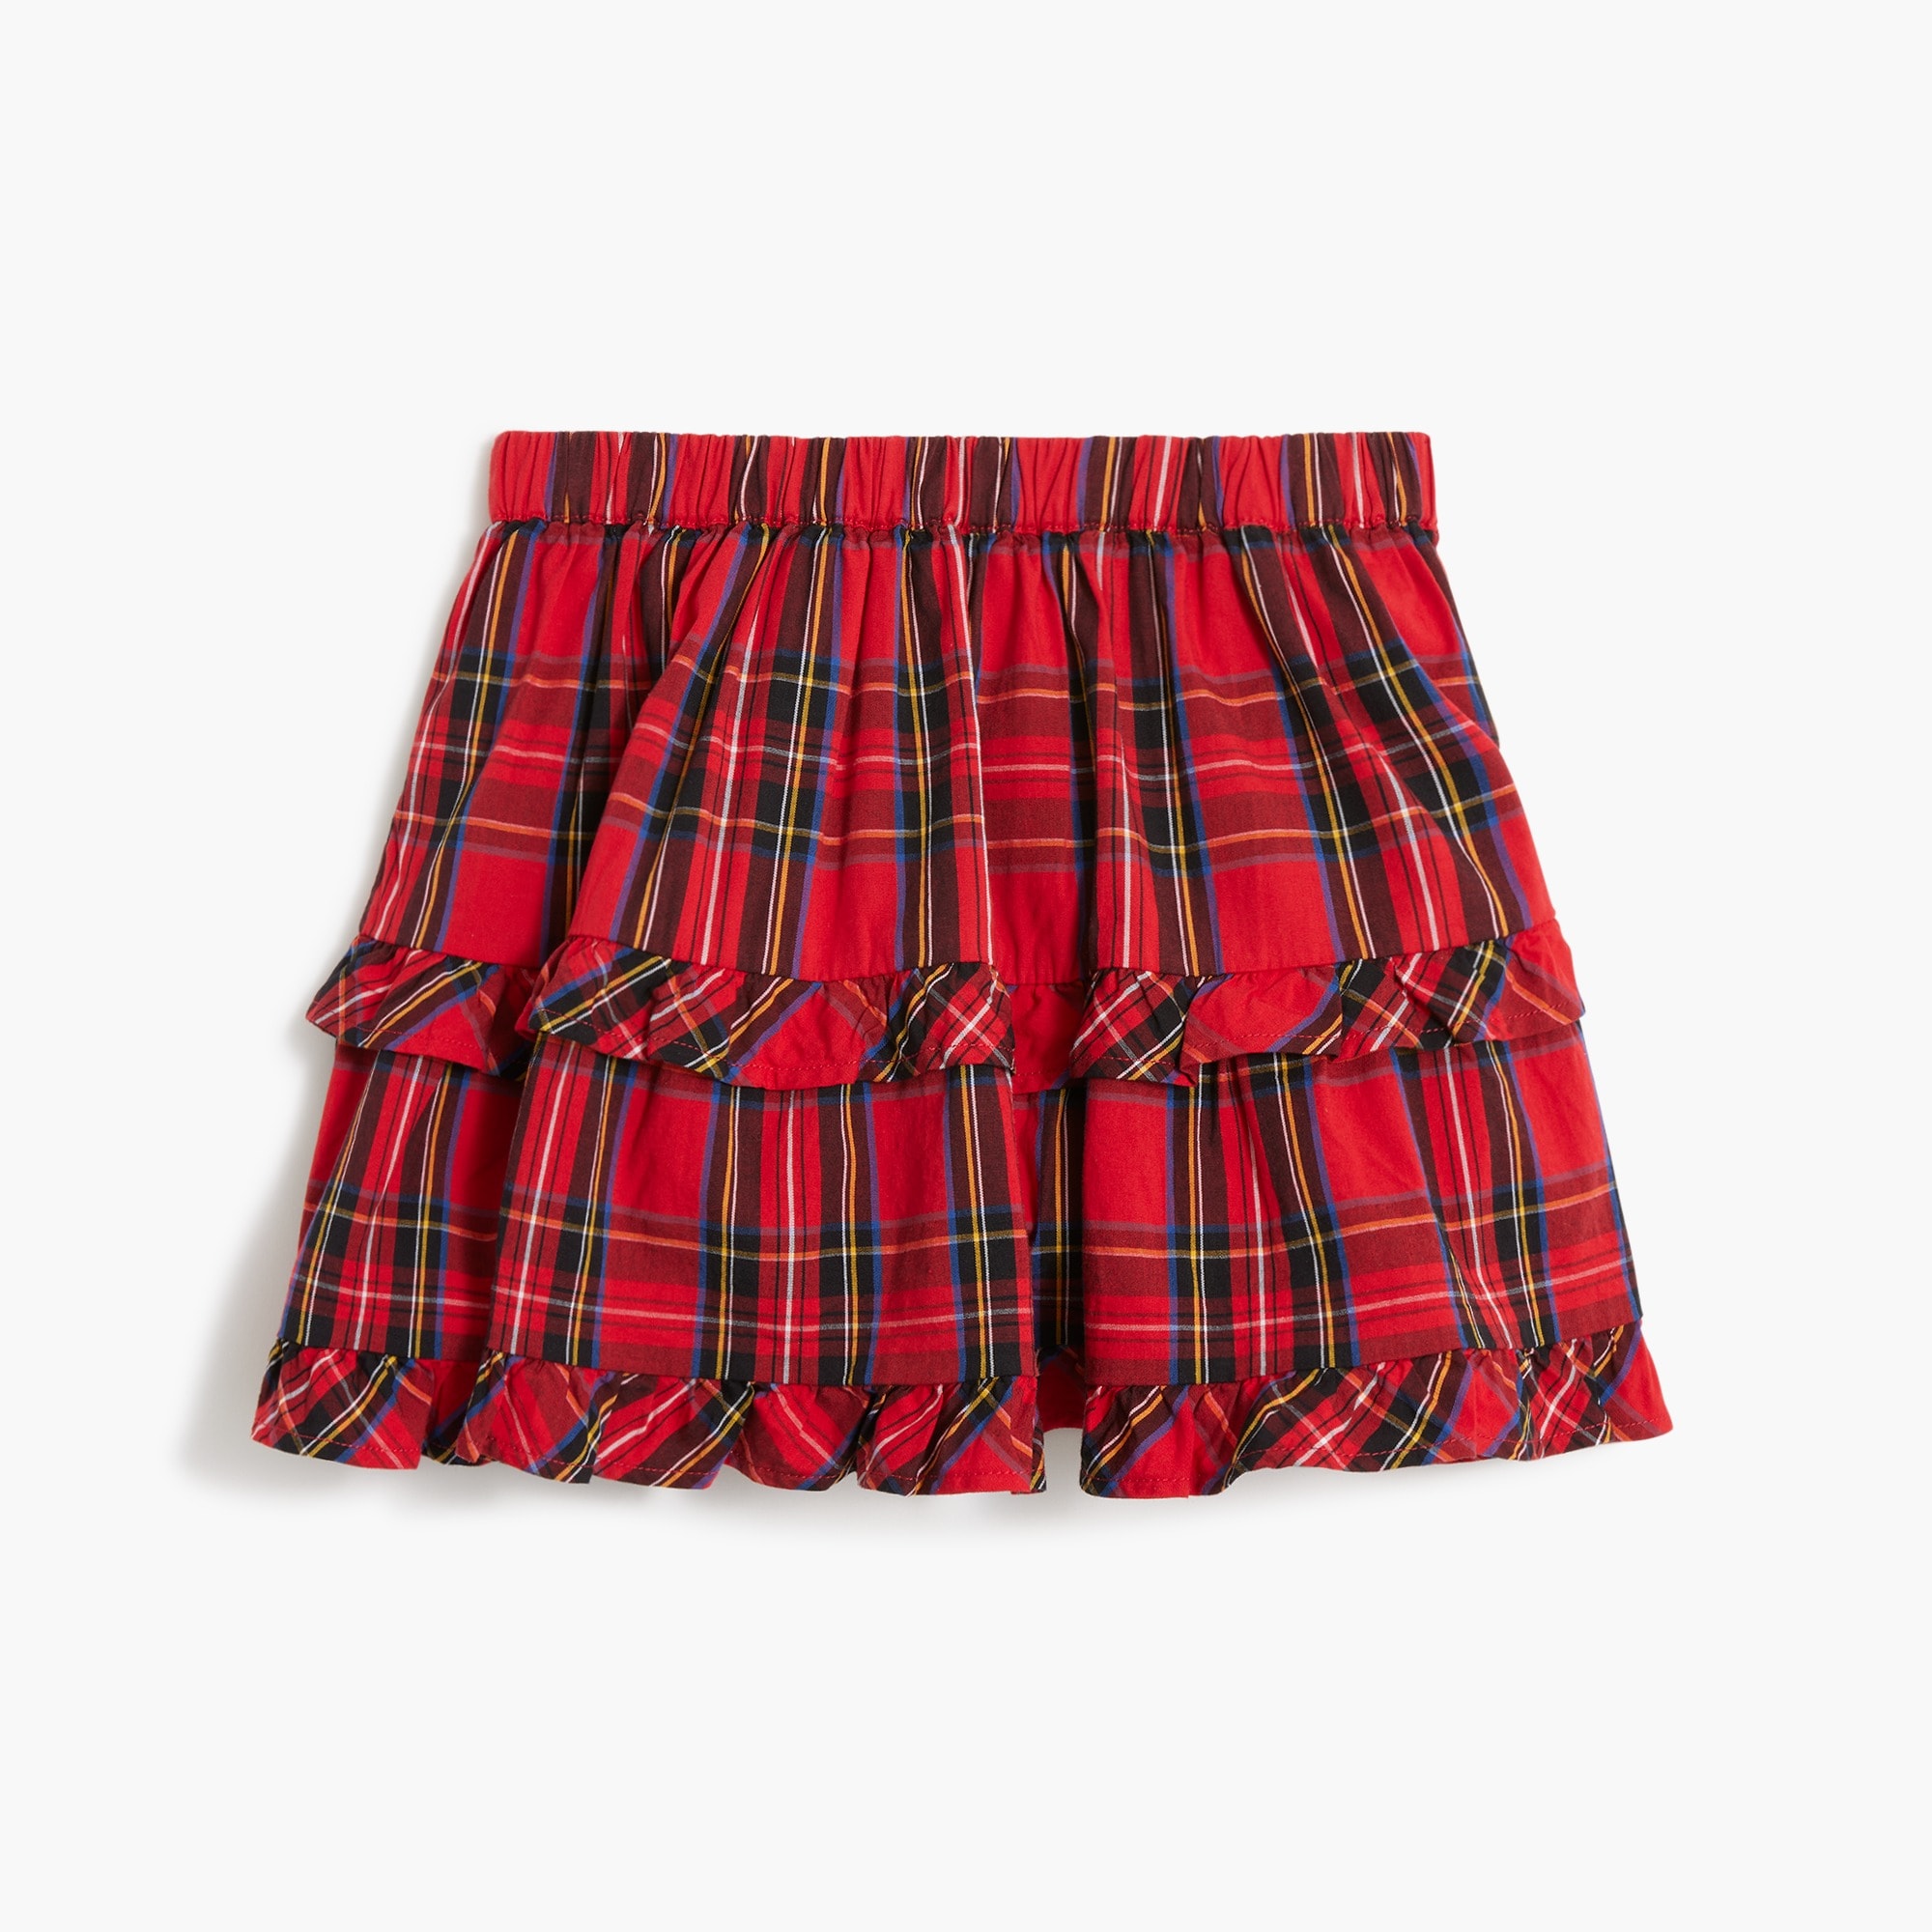 Girls' tartan tiered ruffle skirt